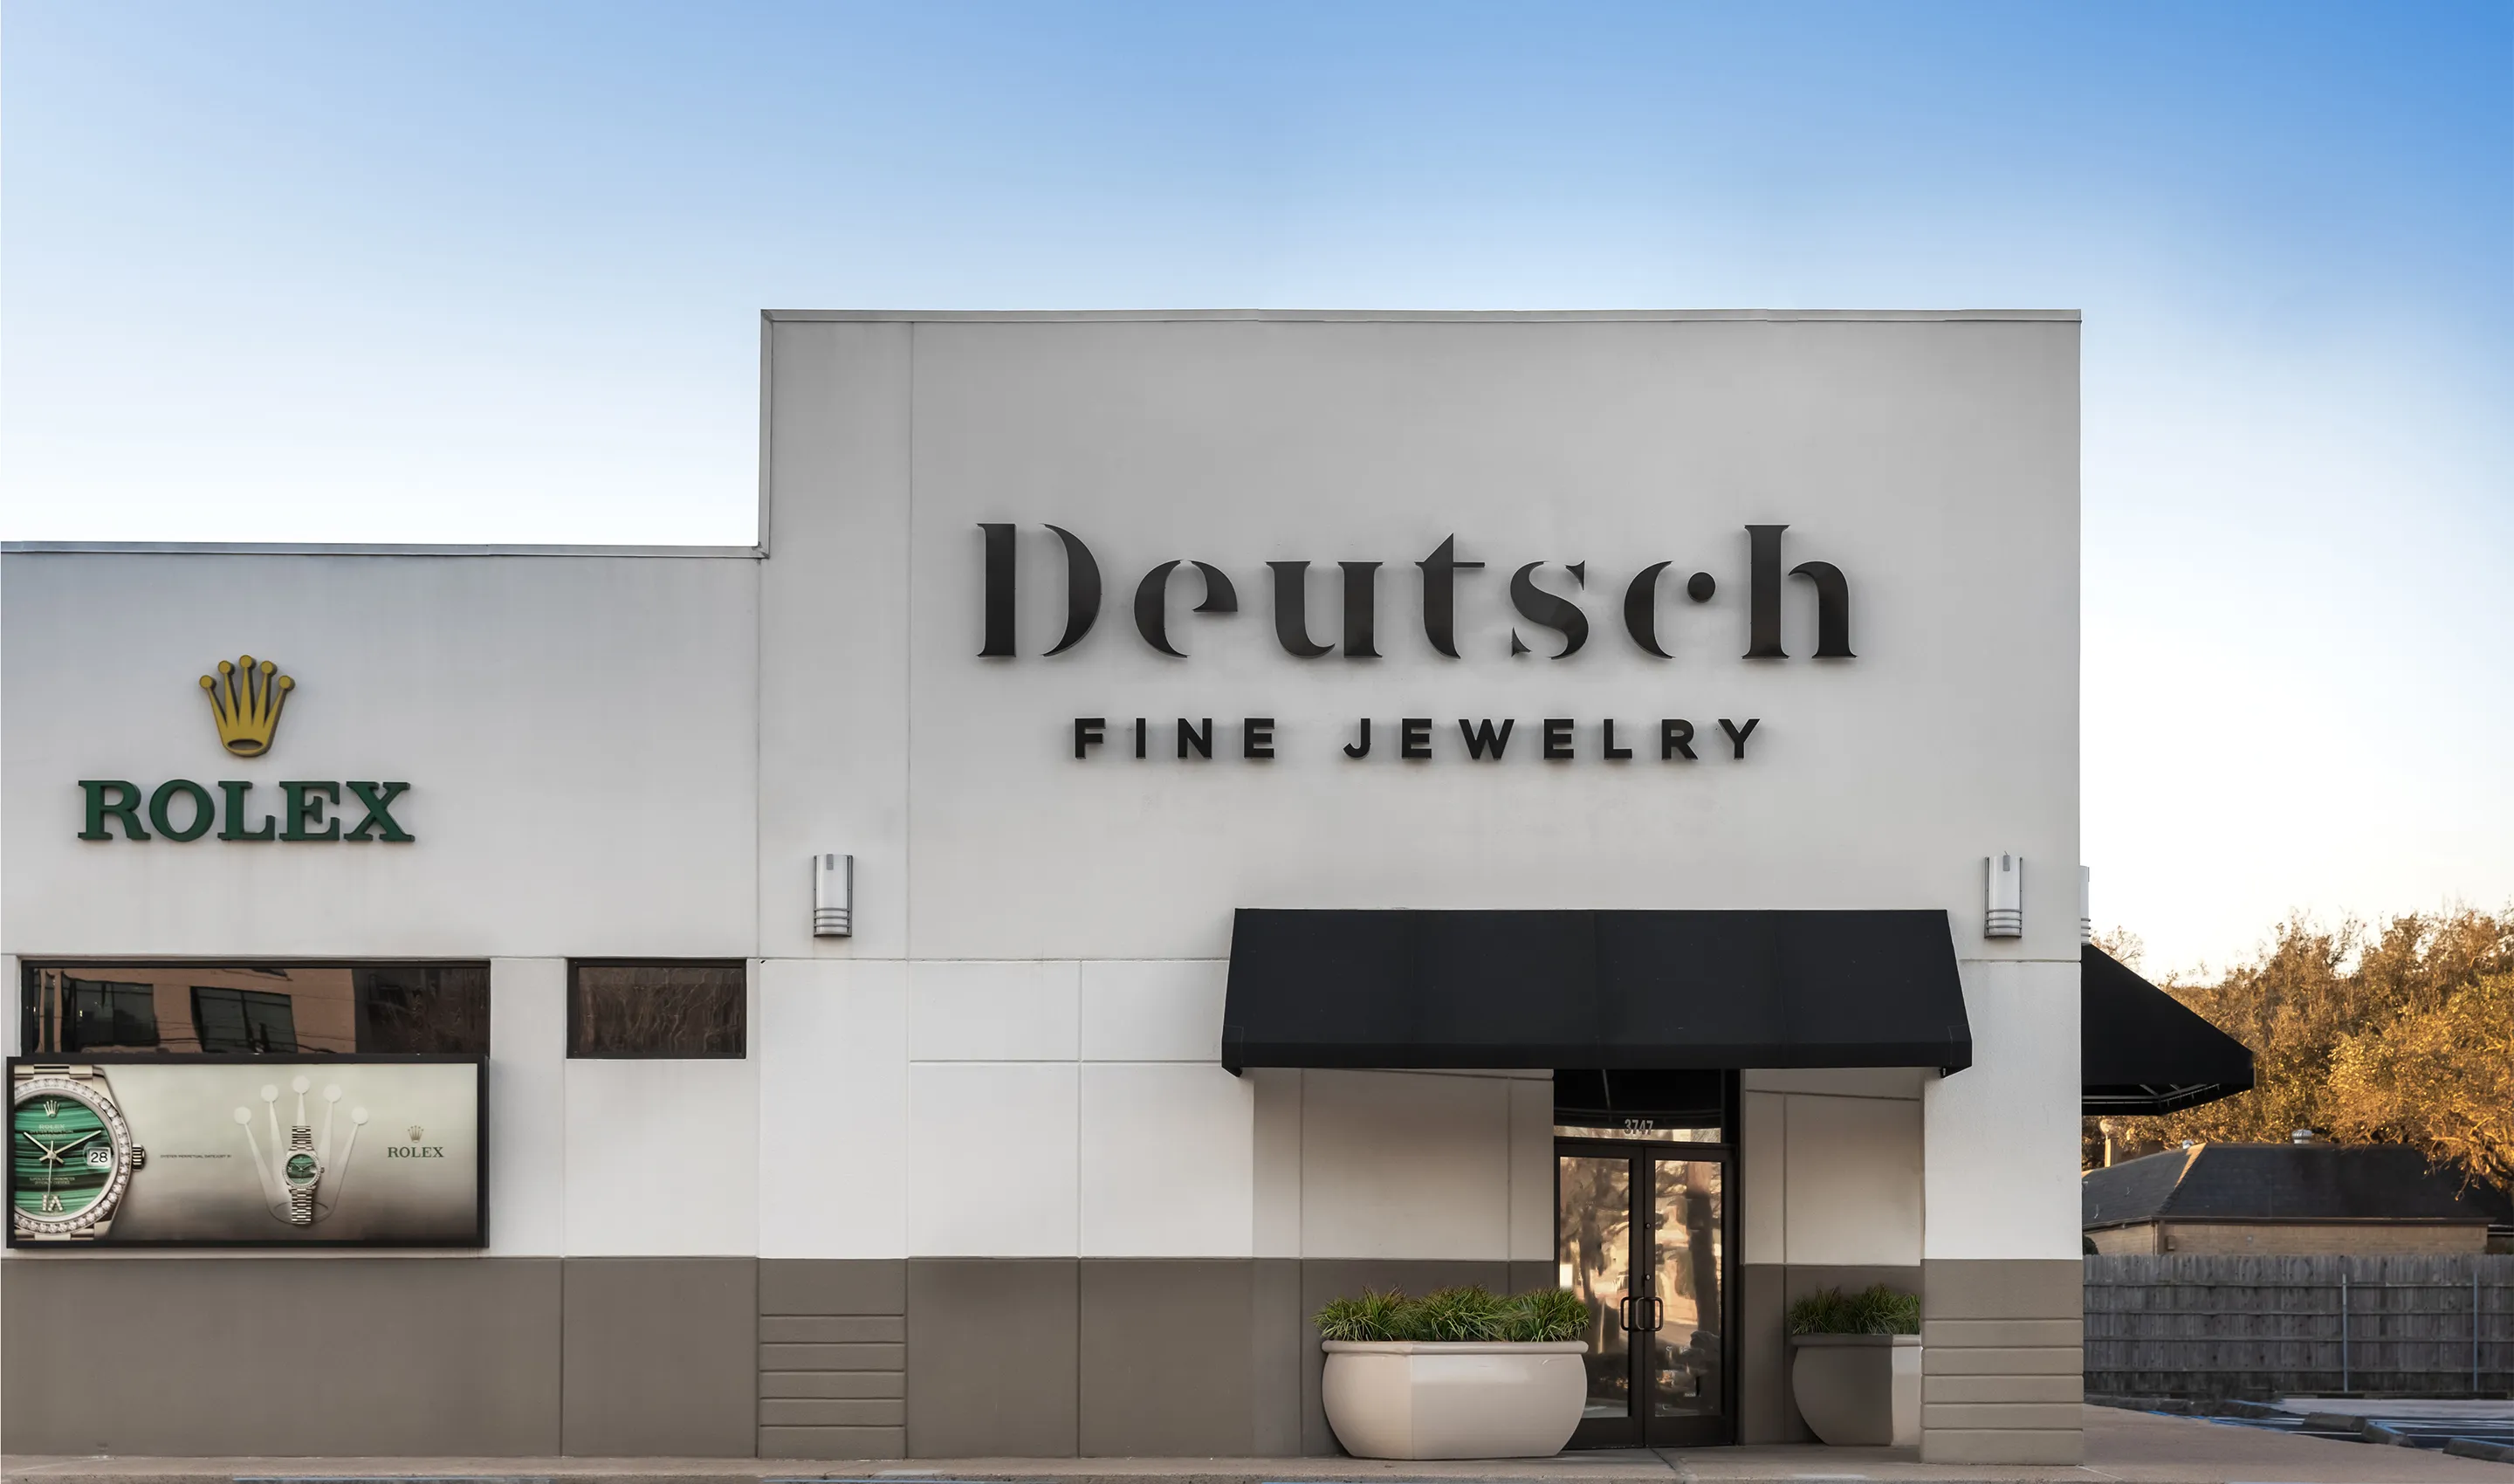 Deutsch Fine Jewelry